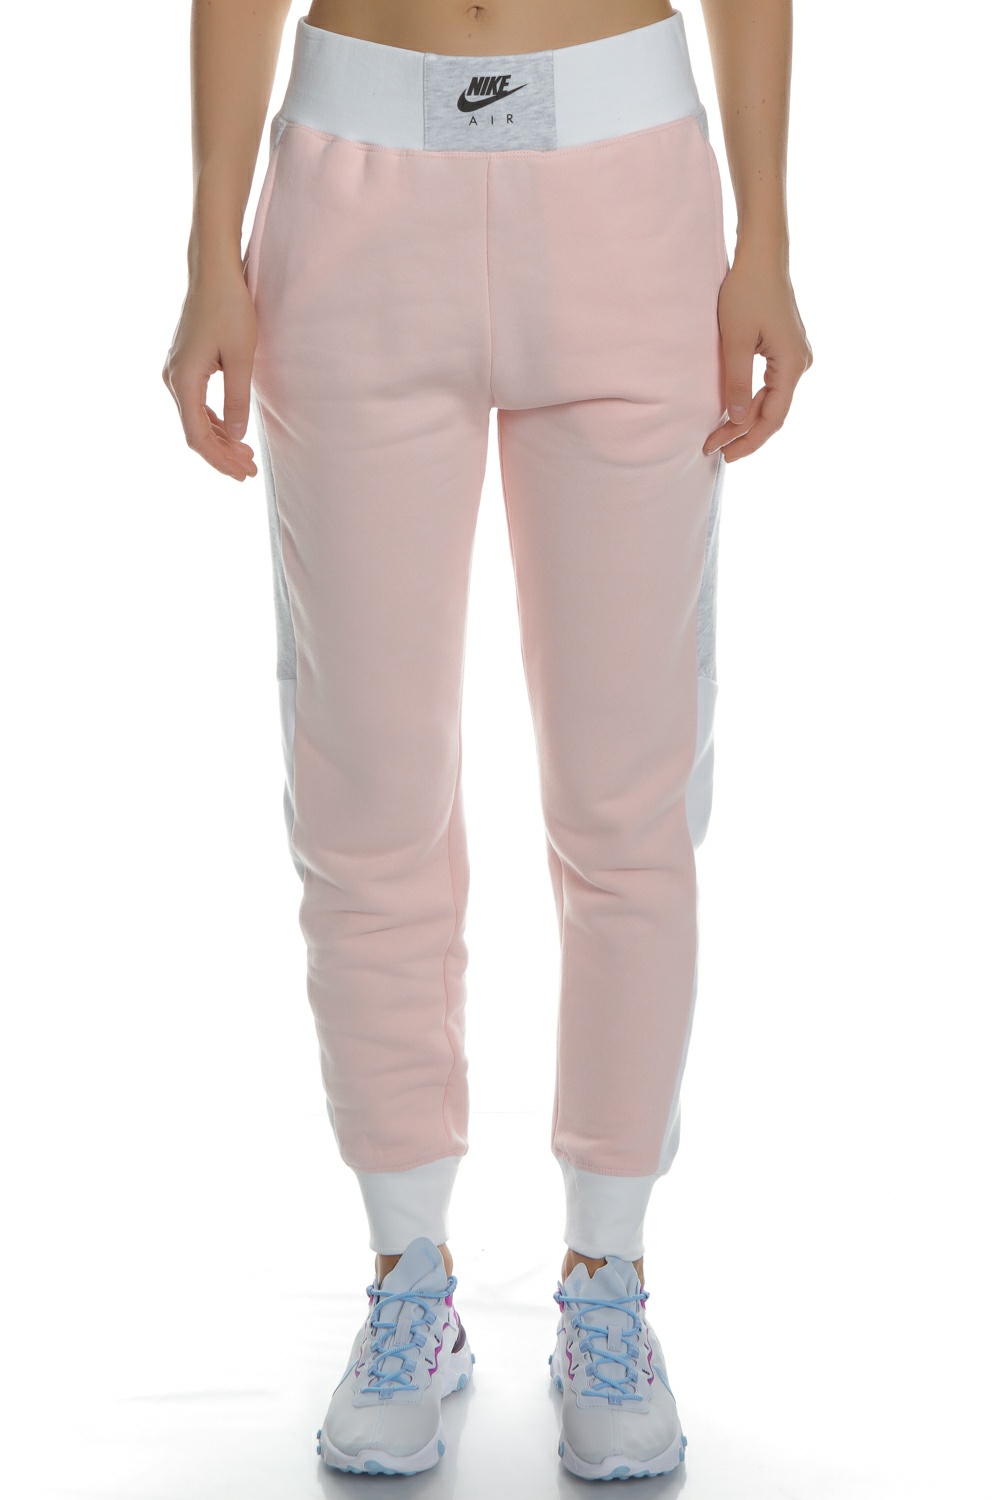 Γυναικεία/Ρούχα/Αθλητικά/Φόρμες NIKE - Γυναικείο παντελόνι φόρμας NIKE AIR ροζ